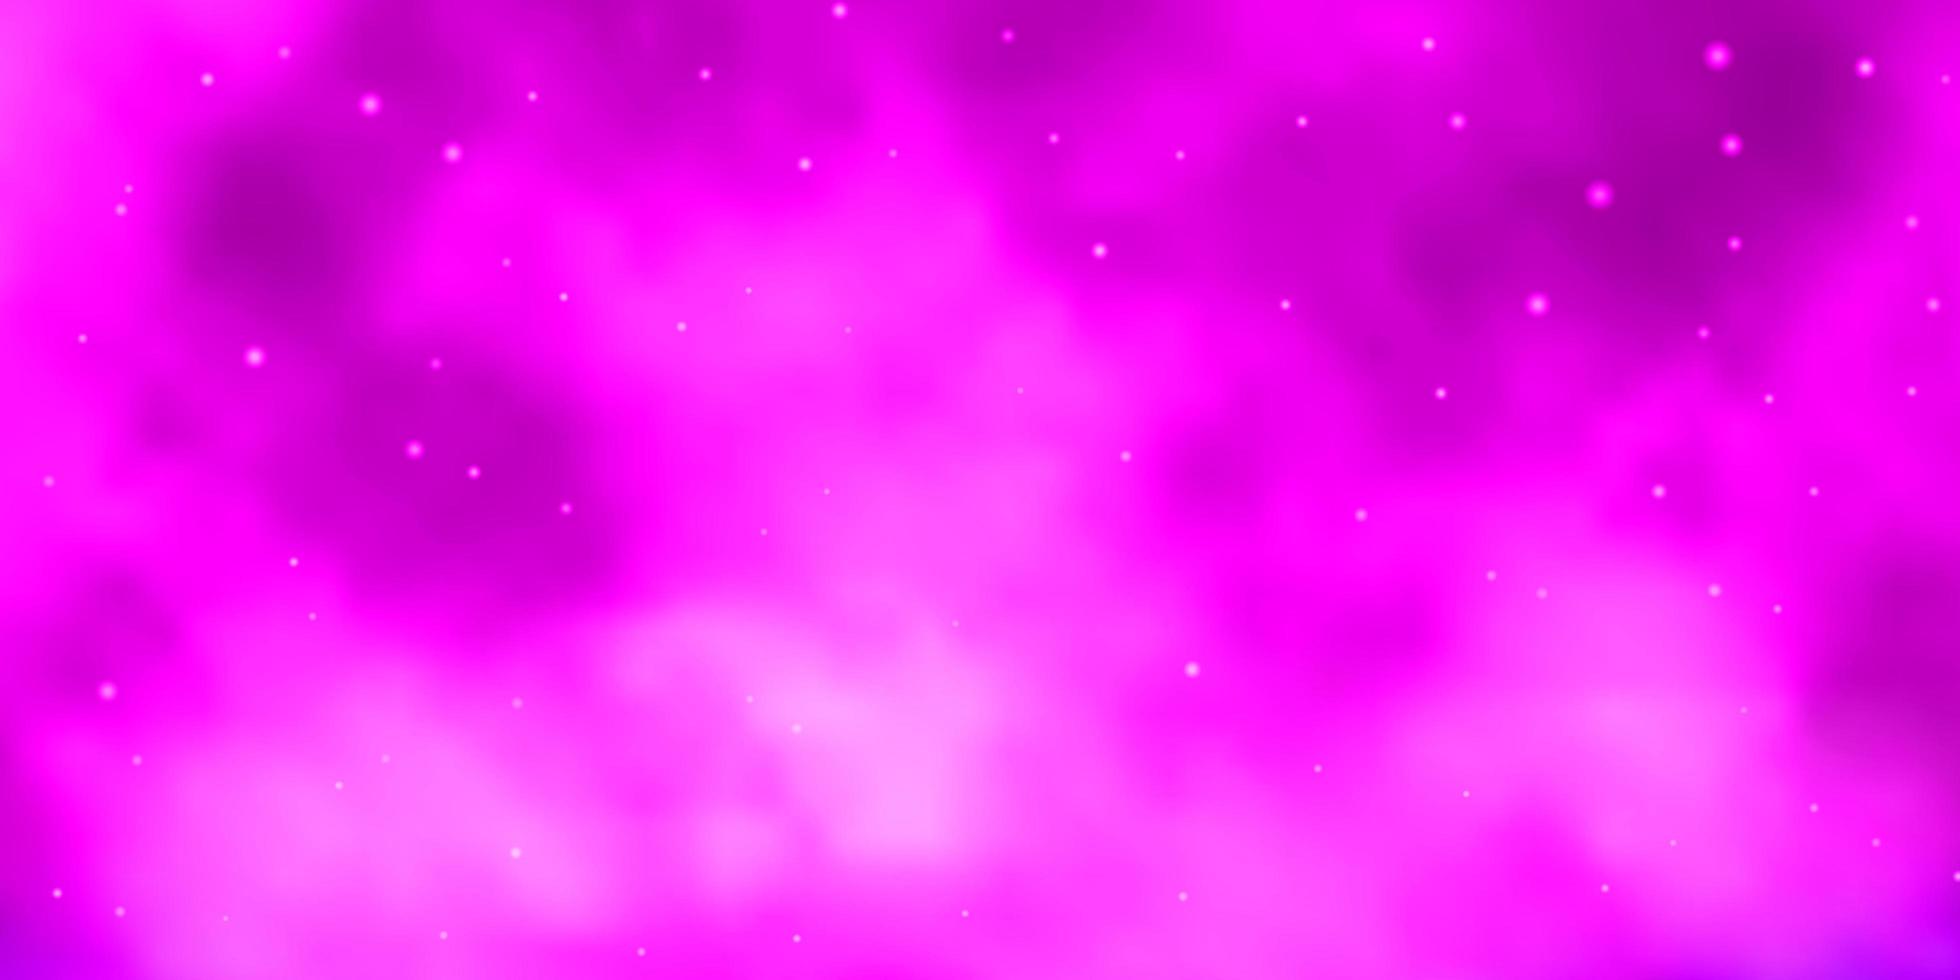 patrón de vector azul rosa claro con estrellas abstractas diseño decorativo borroso en estilo simple con estrellas mejor diseño para su banner de cartel publicitario